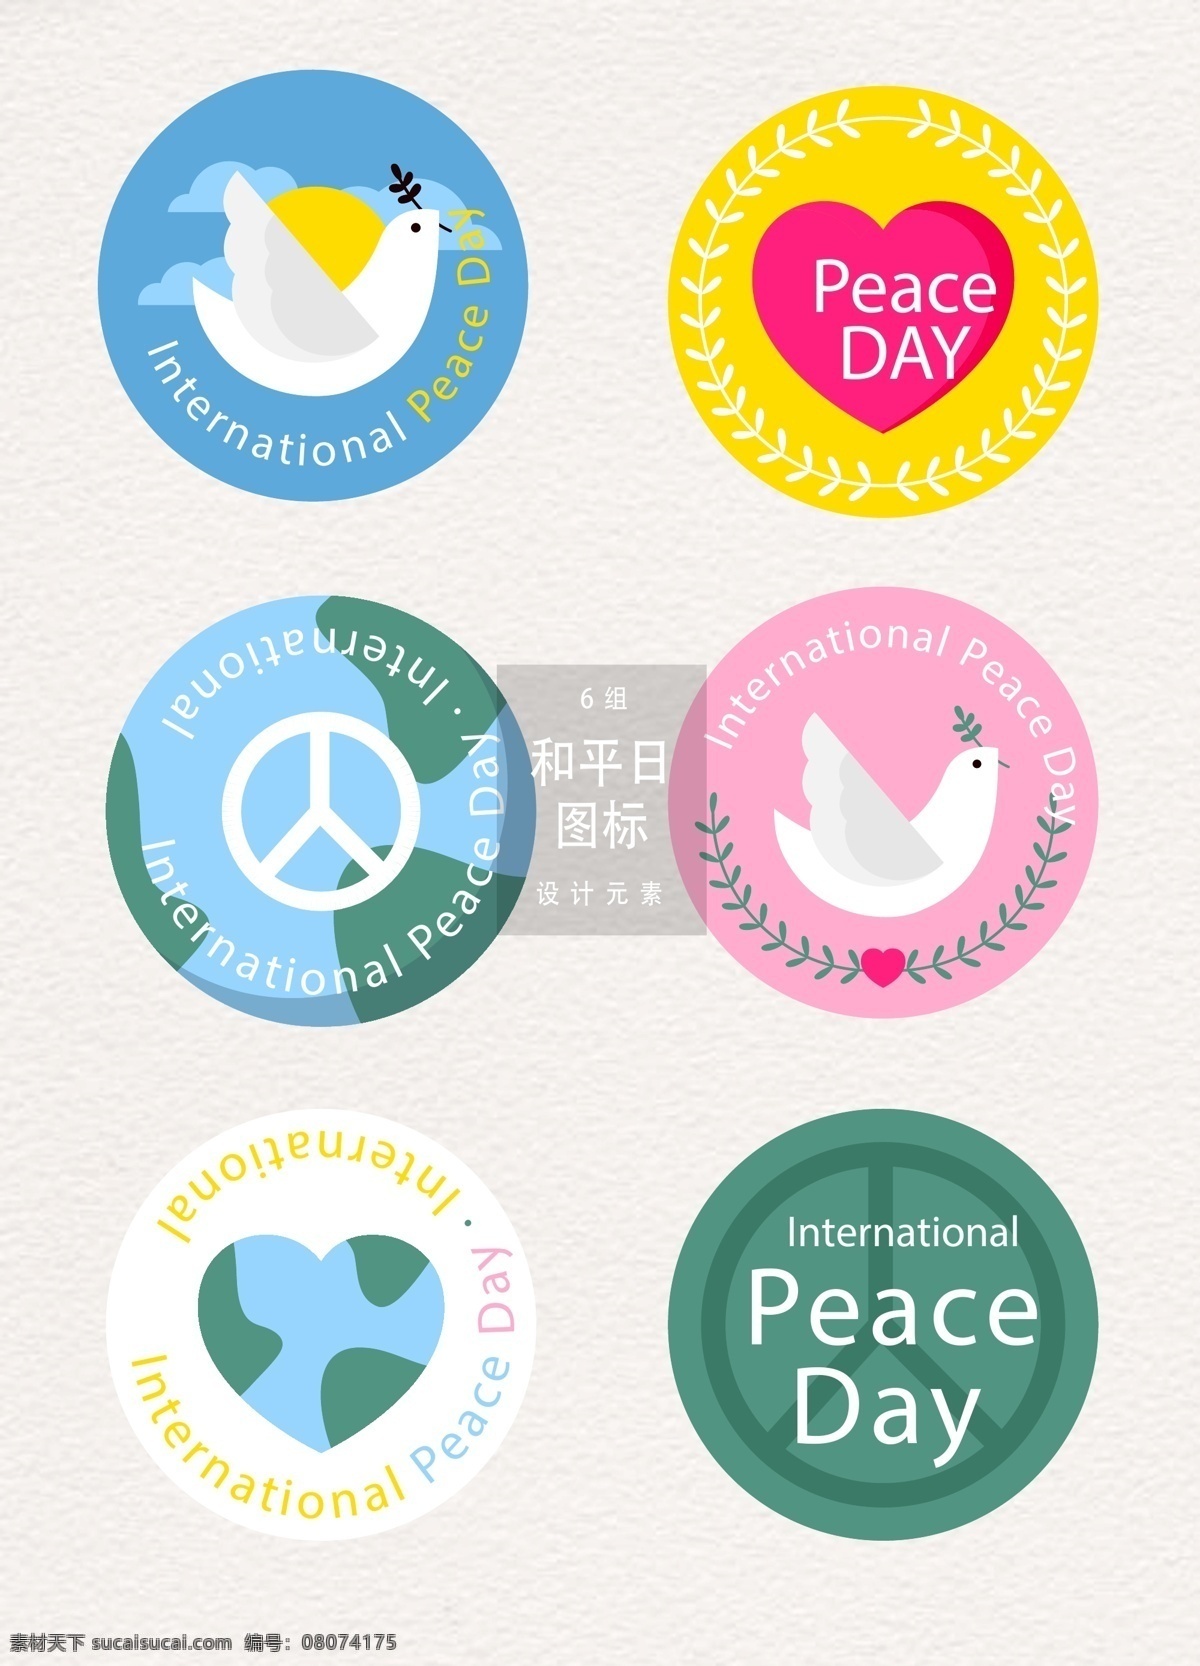 世界 平日 图标 元素 和平 设计元素 鸽子 和平鸽 地球 和平日图标 世界和平日 世界和平 世界和平图标